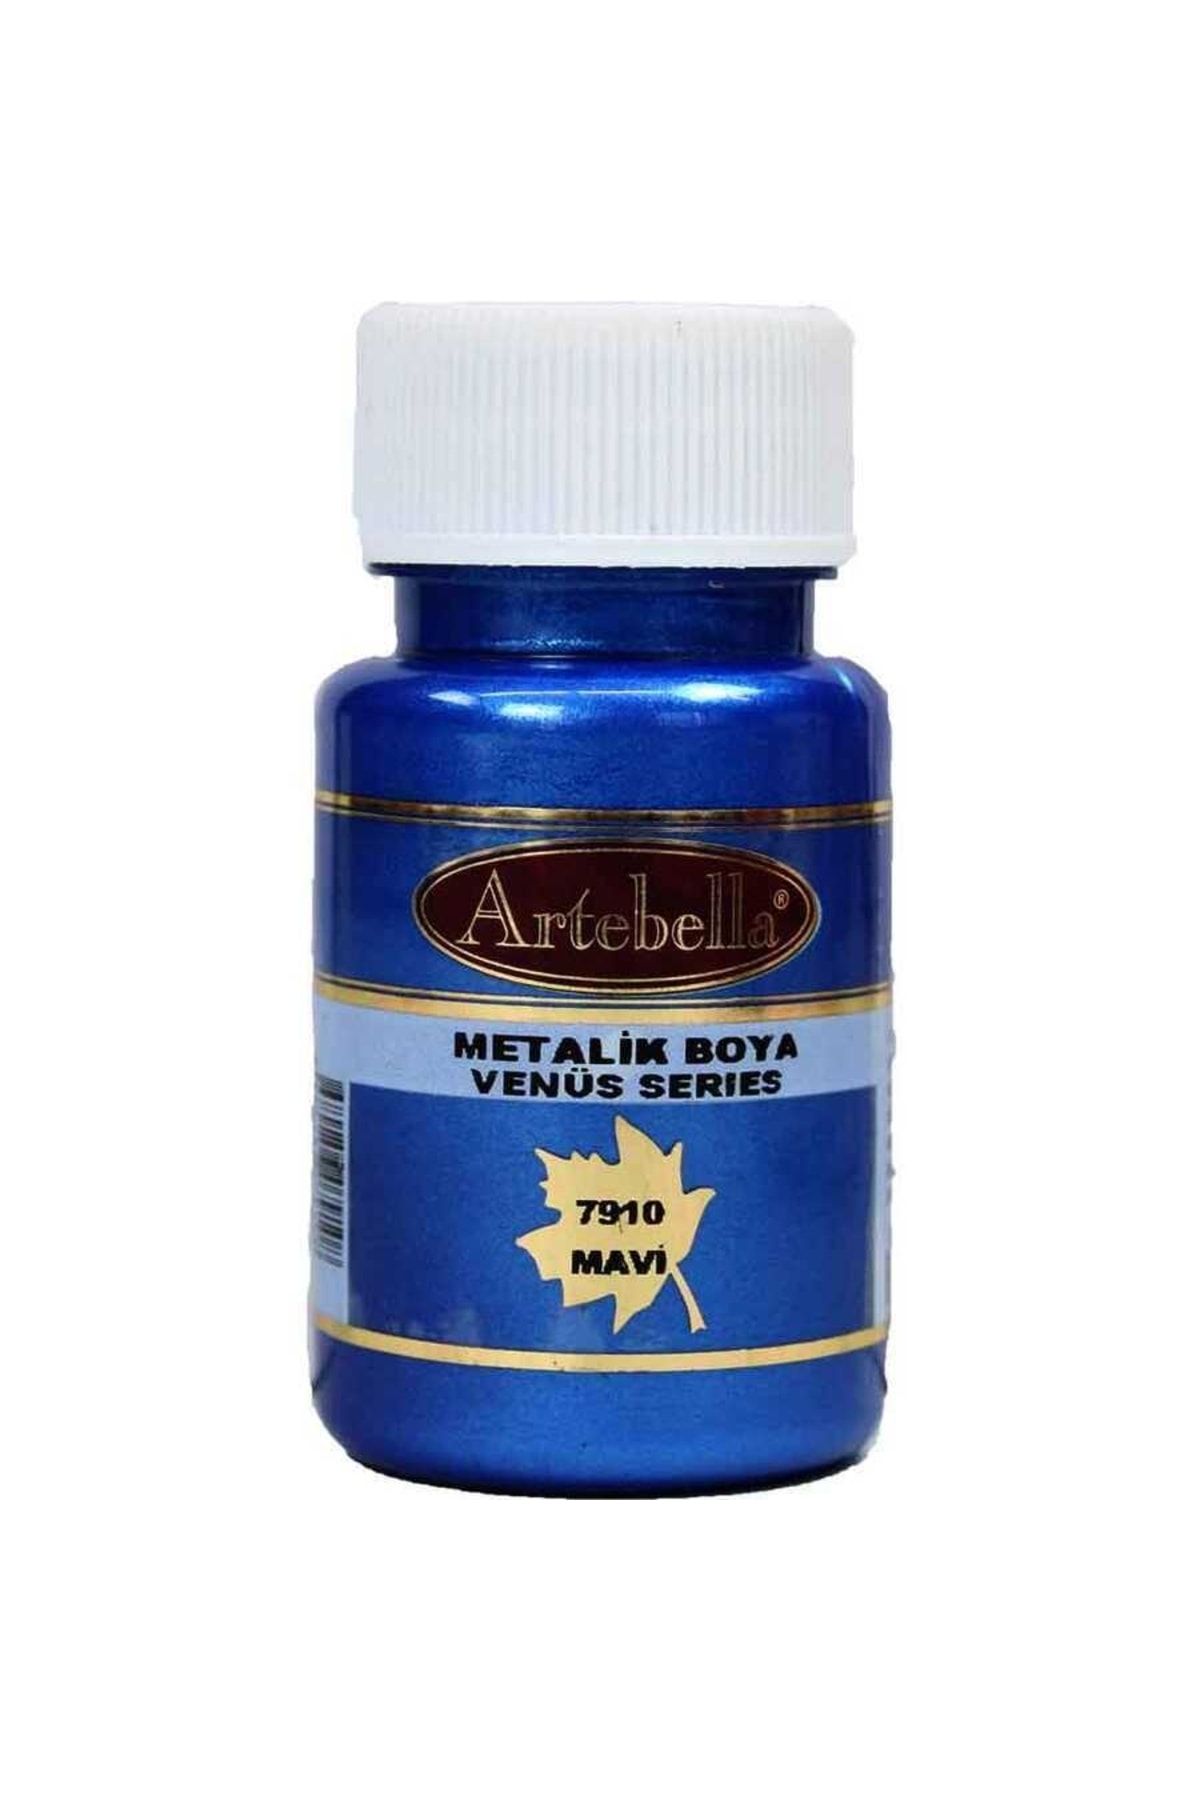 Artebella Venüs Serisi Metalik Boya 791050 Mavi 50 Ml